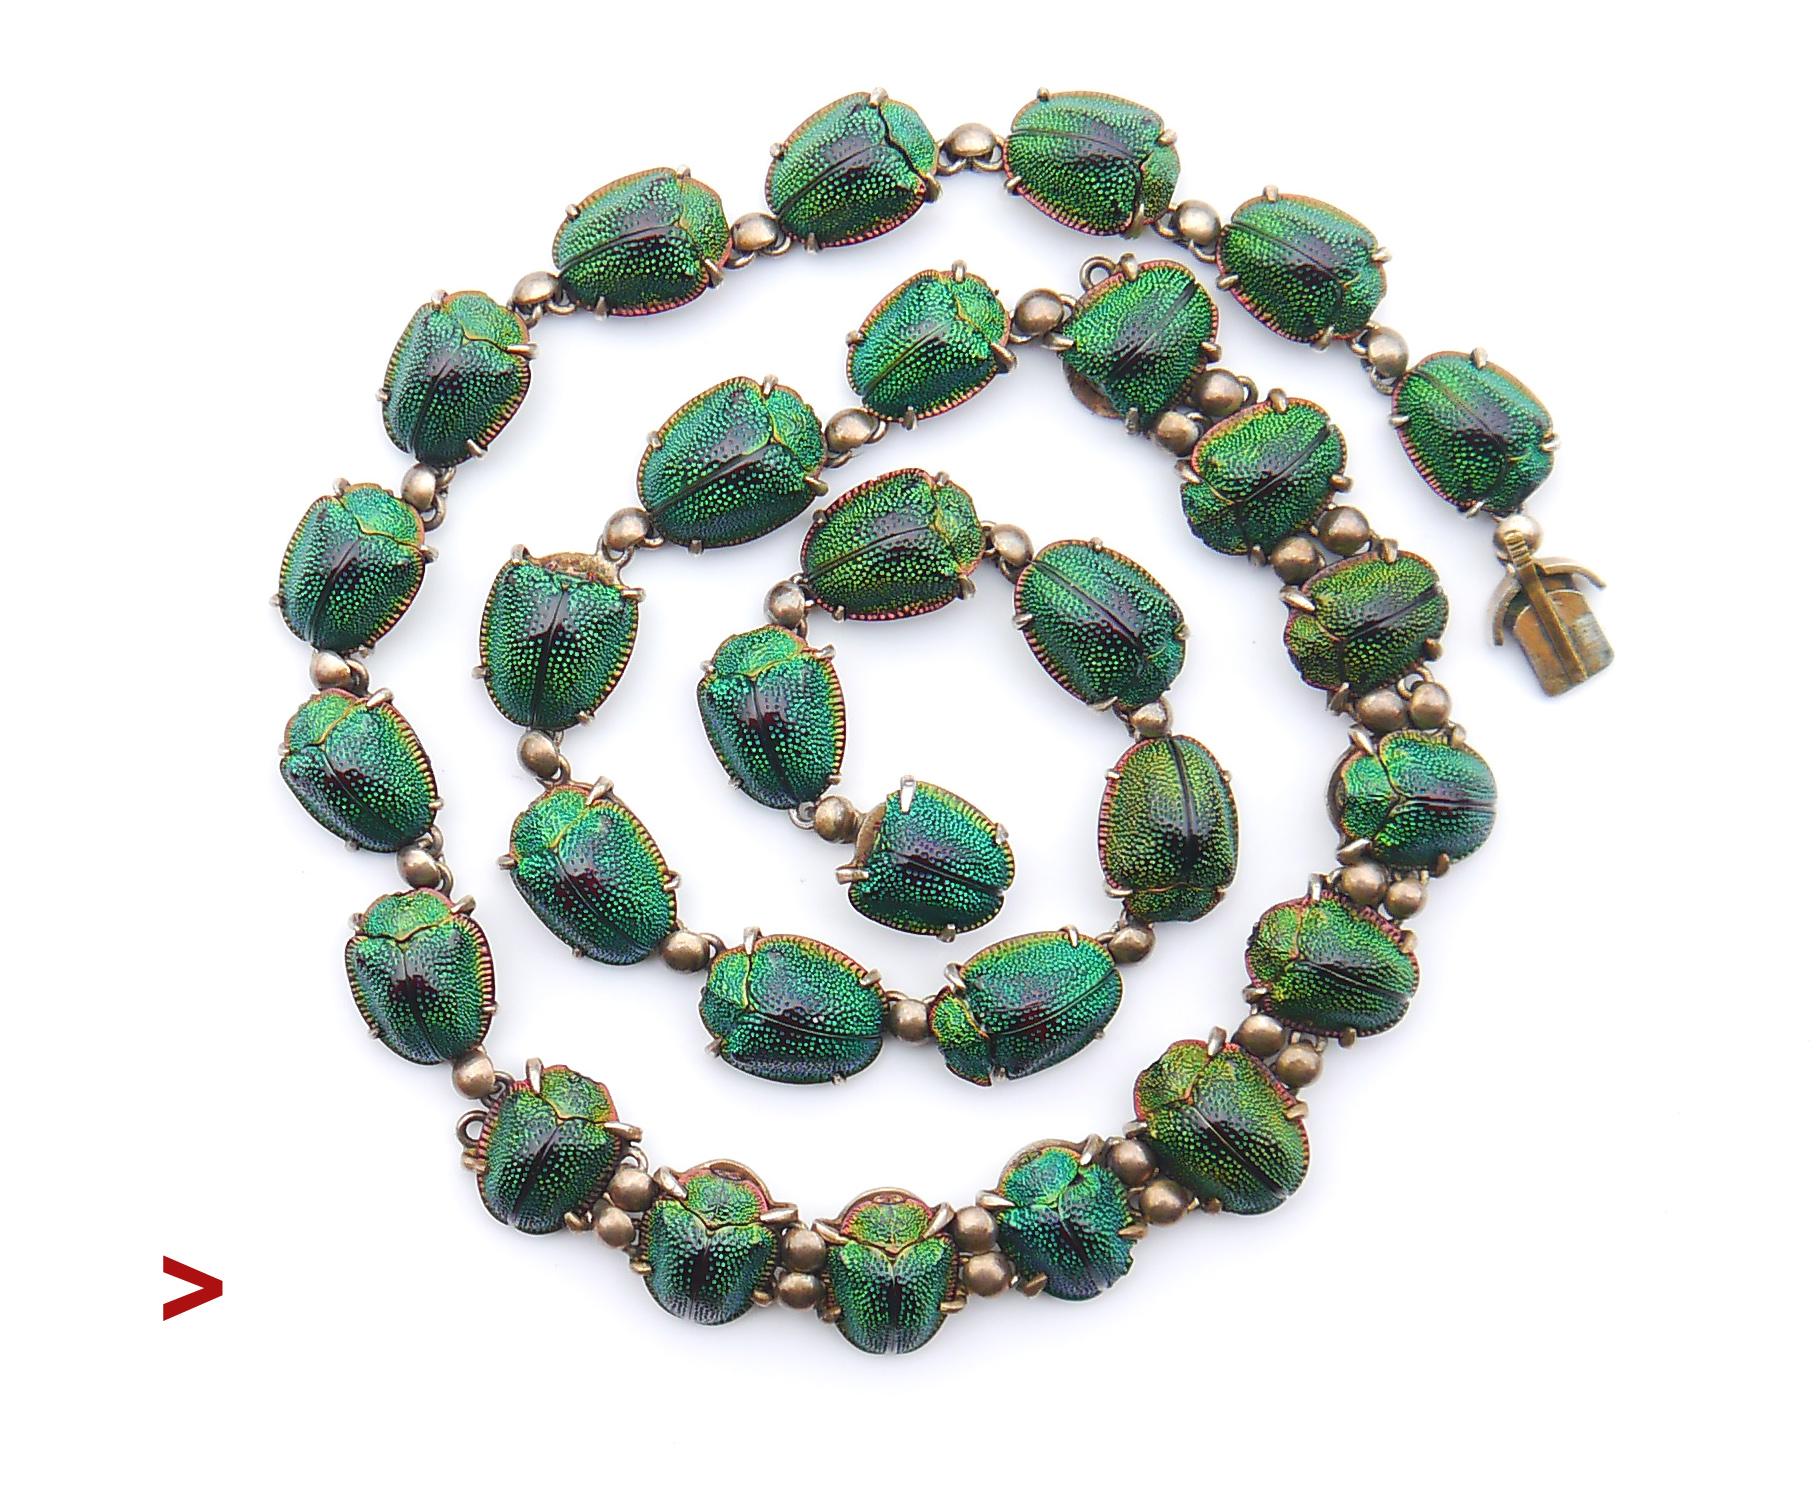 
Rare et très inhabituelle pièce de collier de style égyptien - revival avec 30 scarabées verts émeraude authentiques sertis dans des cadres en argent doré.

Ces coléoptères tortues chatoyants étaient autrefois l'espèce de choix de l'époque